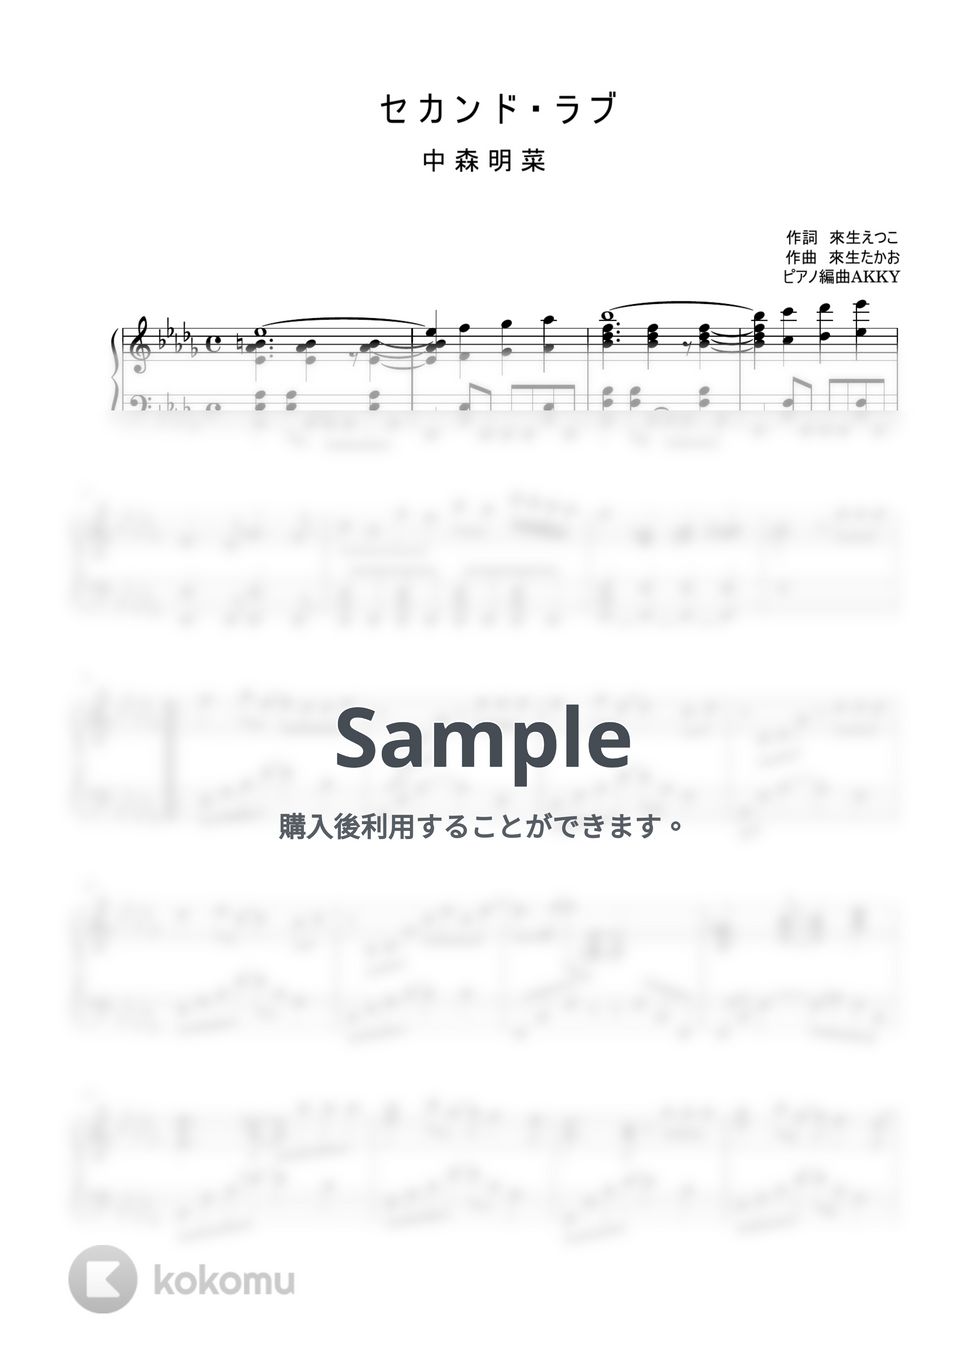 中森明菜 - セカンド・ラブ (ピアノソロ) by AKKY